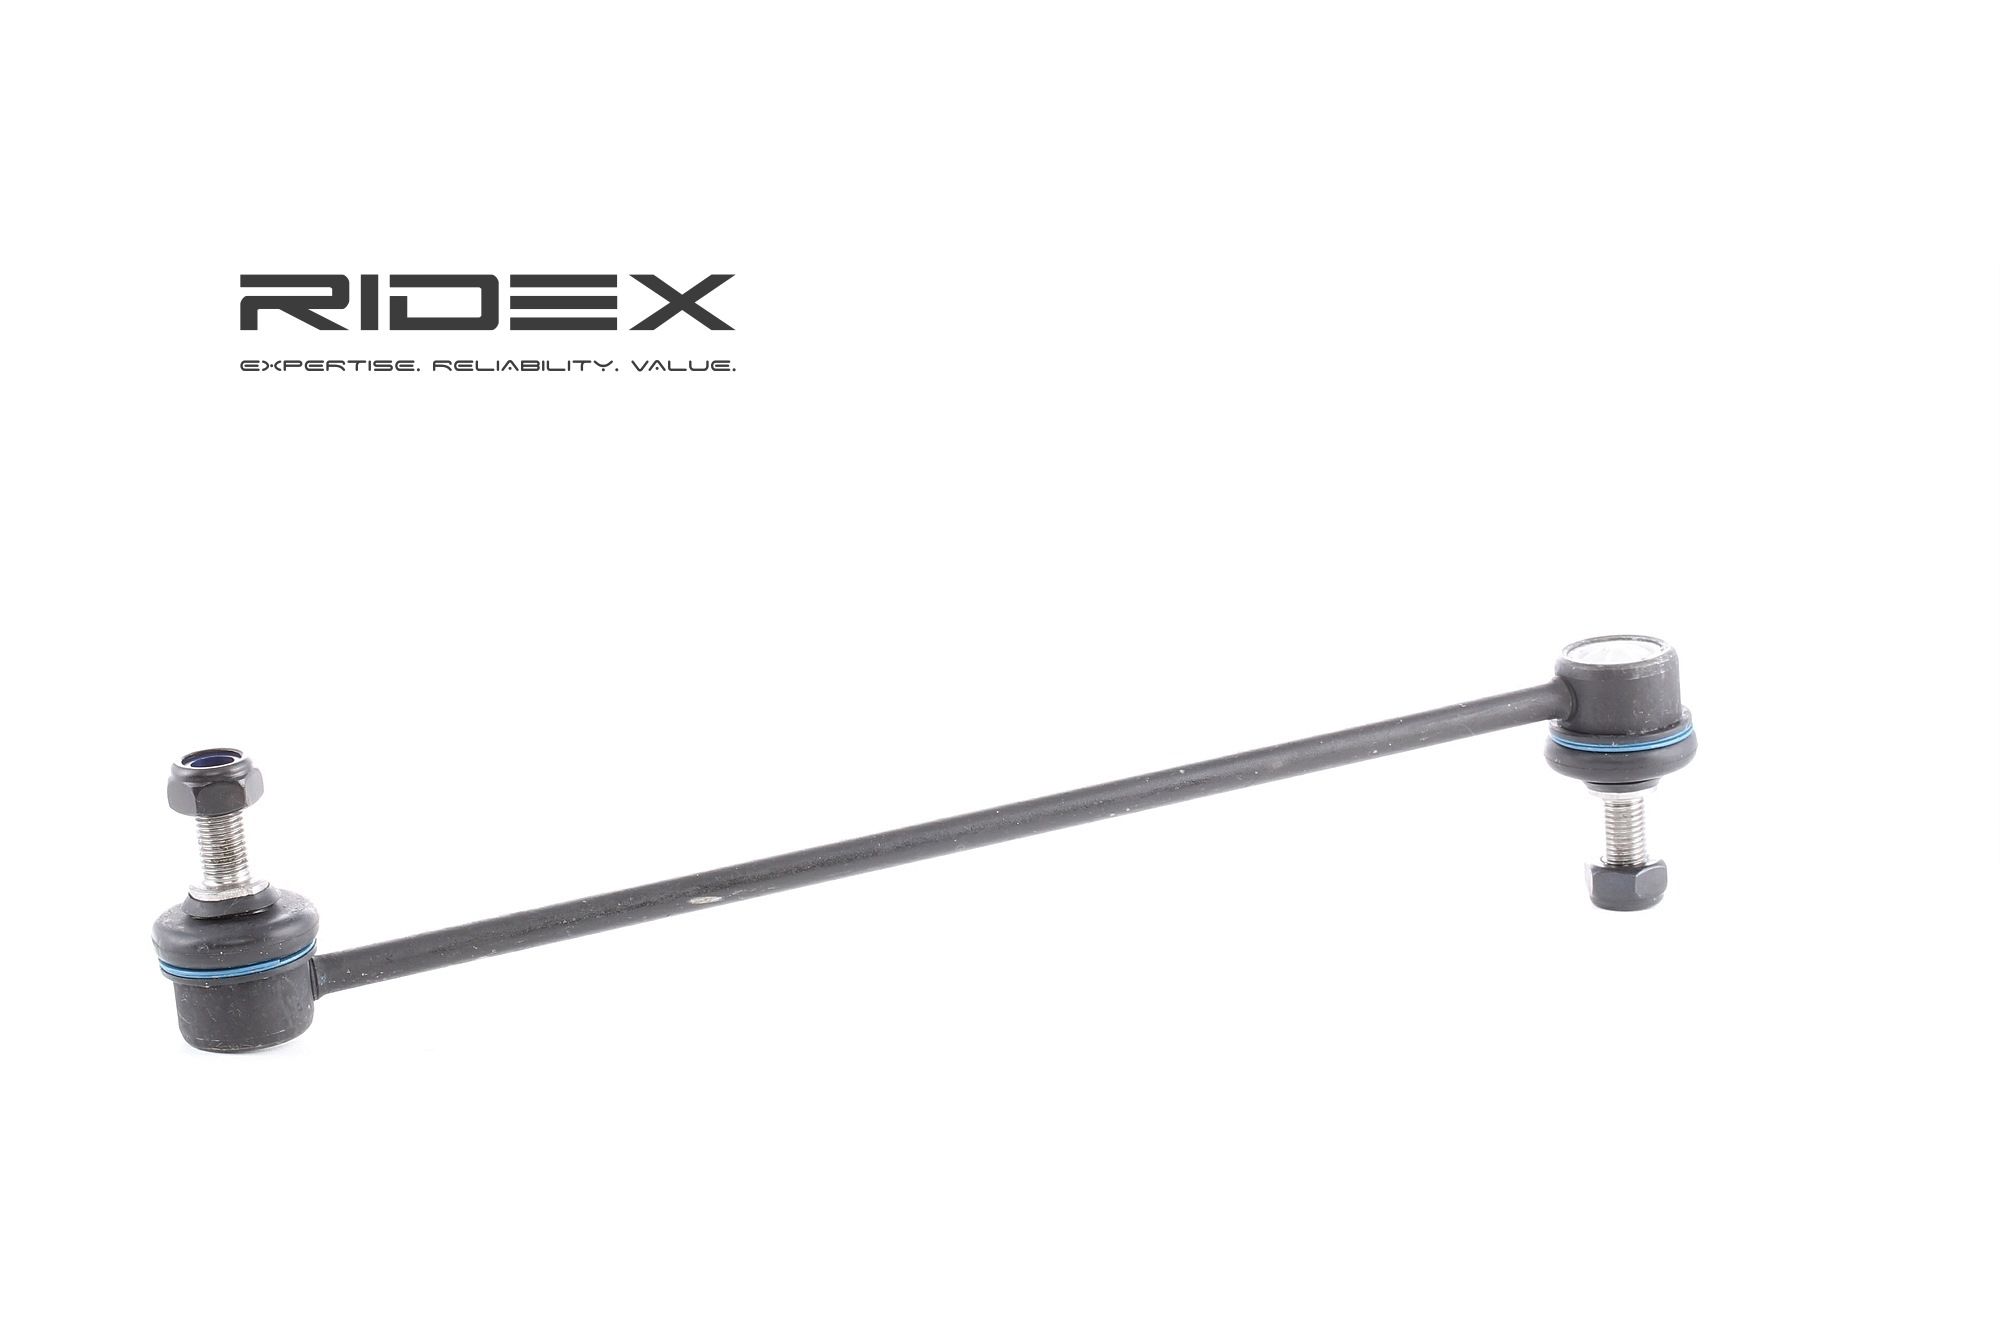 RIDEX 3229S0151 originali OPEL CORSA 2022 Asta puntone stabilizzatore Assale anteriore bilaterale, 310mm, M10x1,5